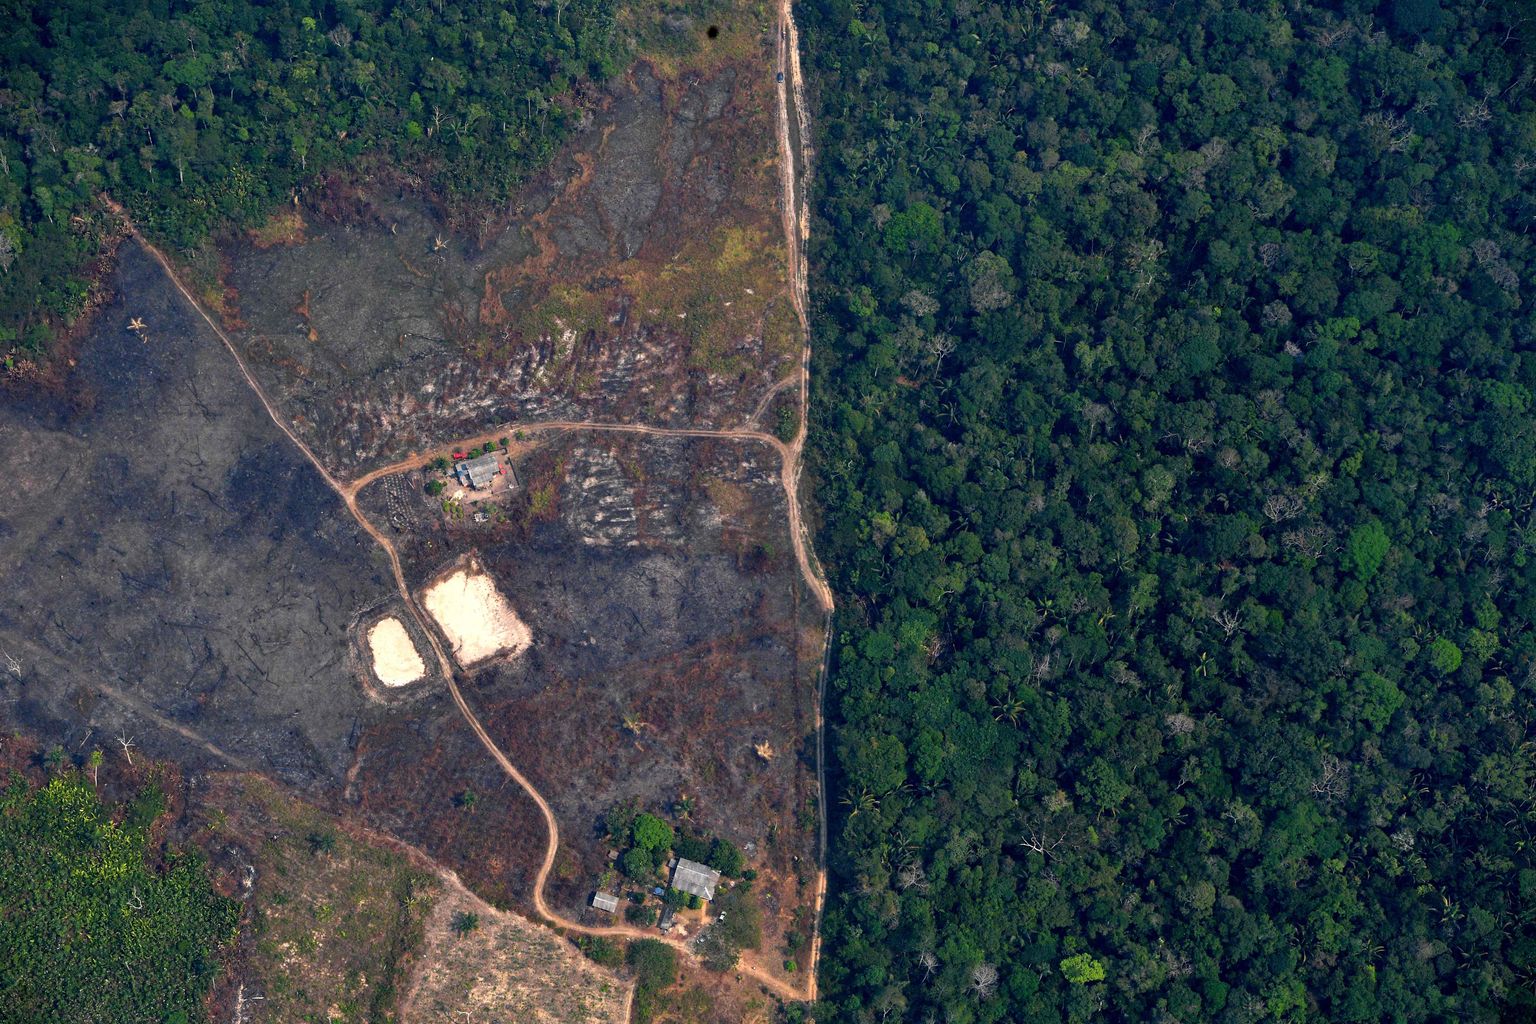 Metsatustatud ala Amazonase vihmametsas Brasiilia põhjaosas 23. augustil 2019 tehtud fotol. Inimtegevuse sekkumine hõimualadel võib endaga kaasa tuua ökoloogilise tasakaalutuse ning vallandada sügaval metsades paiknevate haiguste leviku.